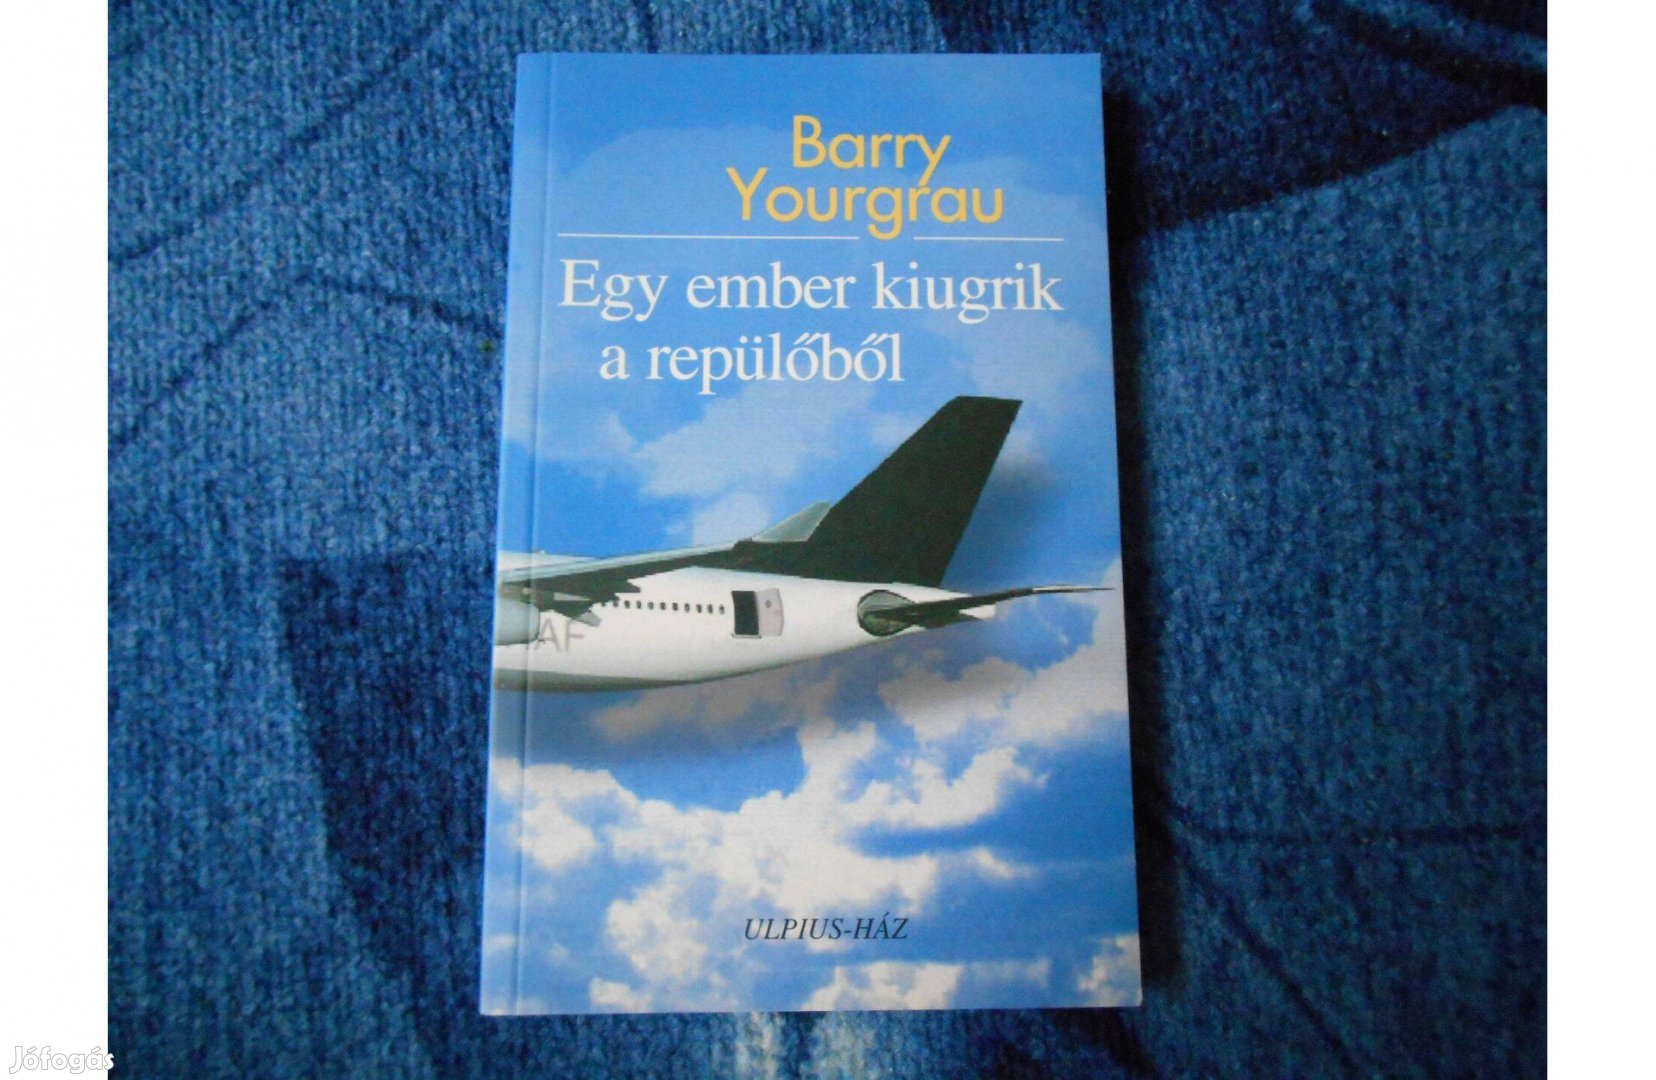 Barry Yourgrau: Egy ember kiugrik a repülőből